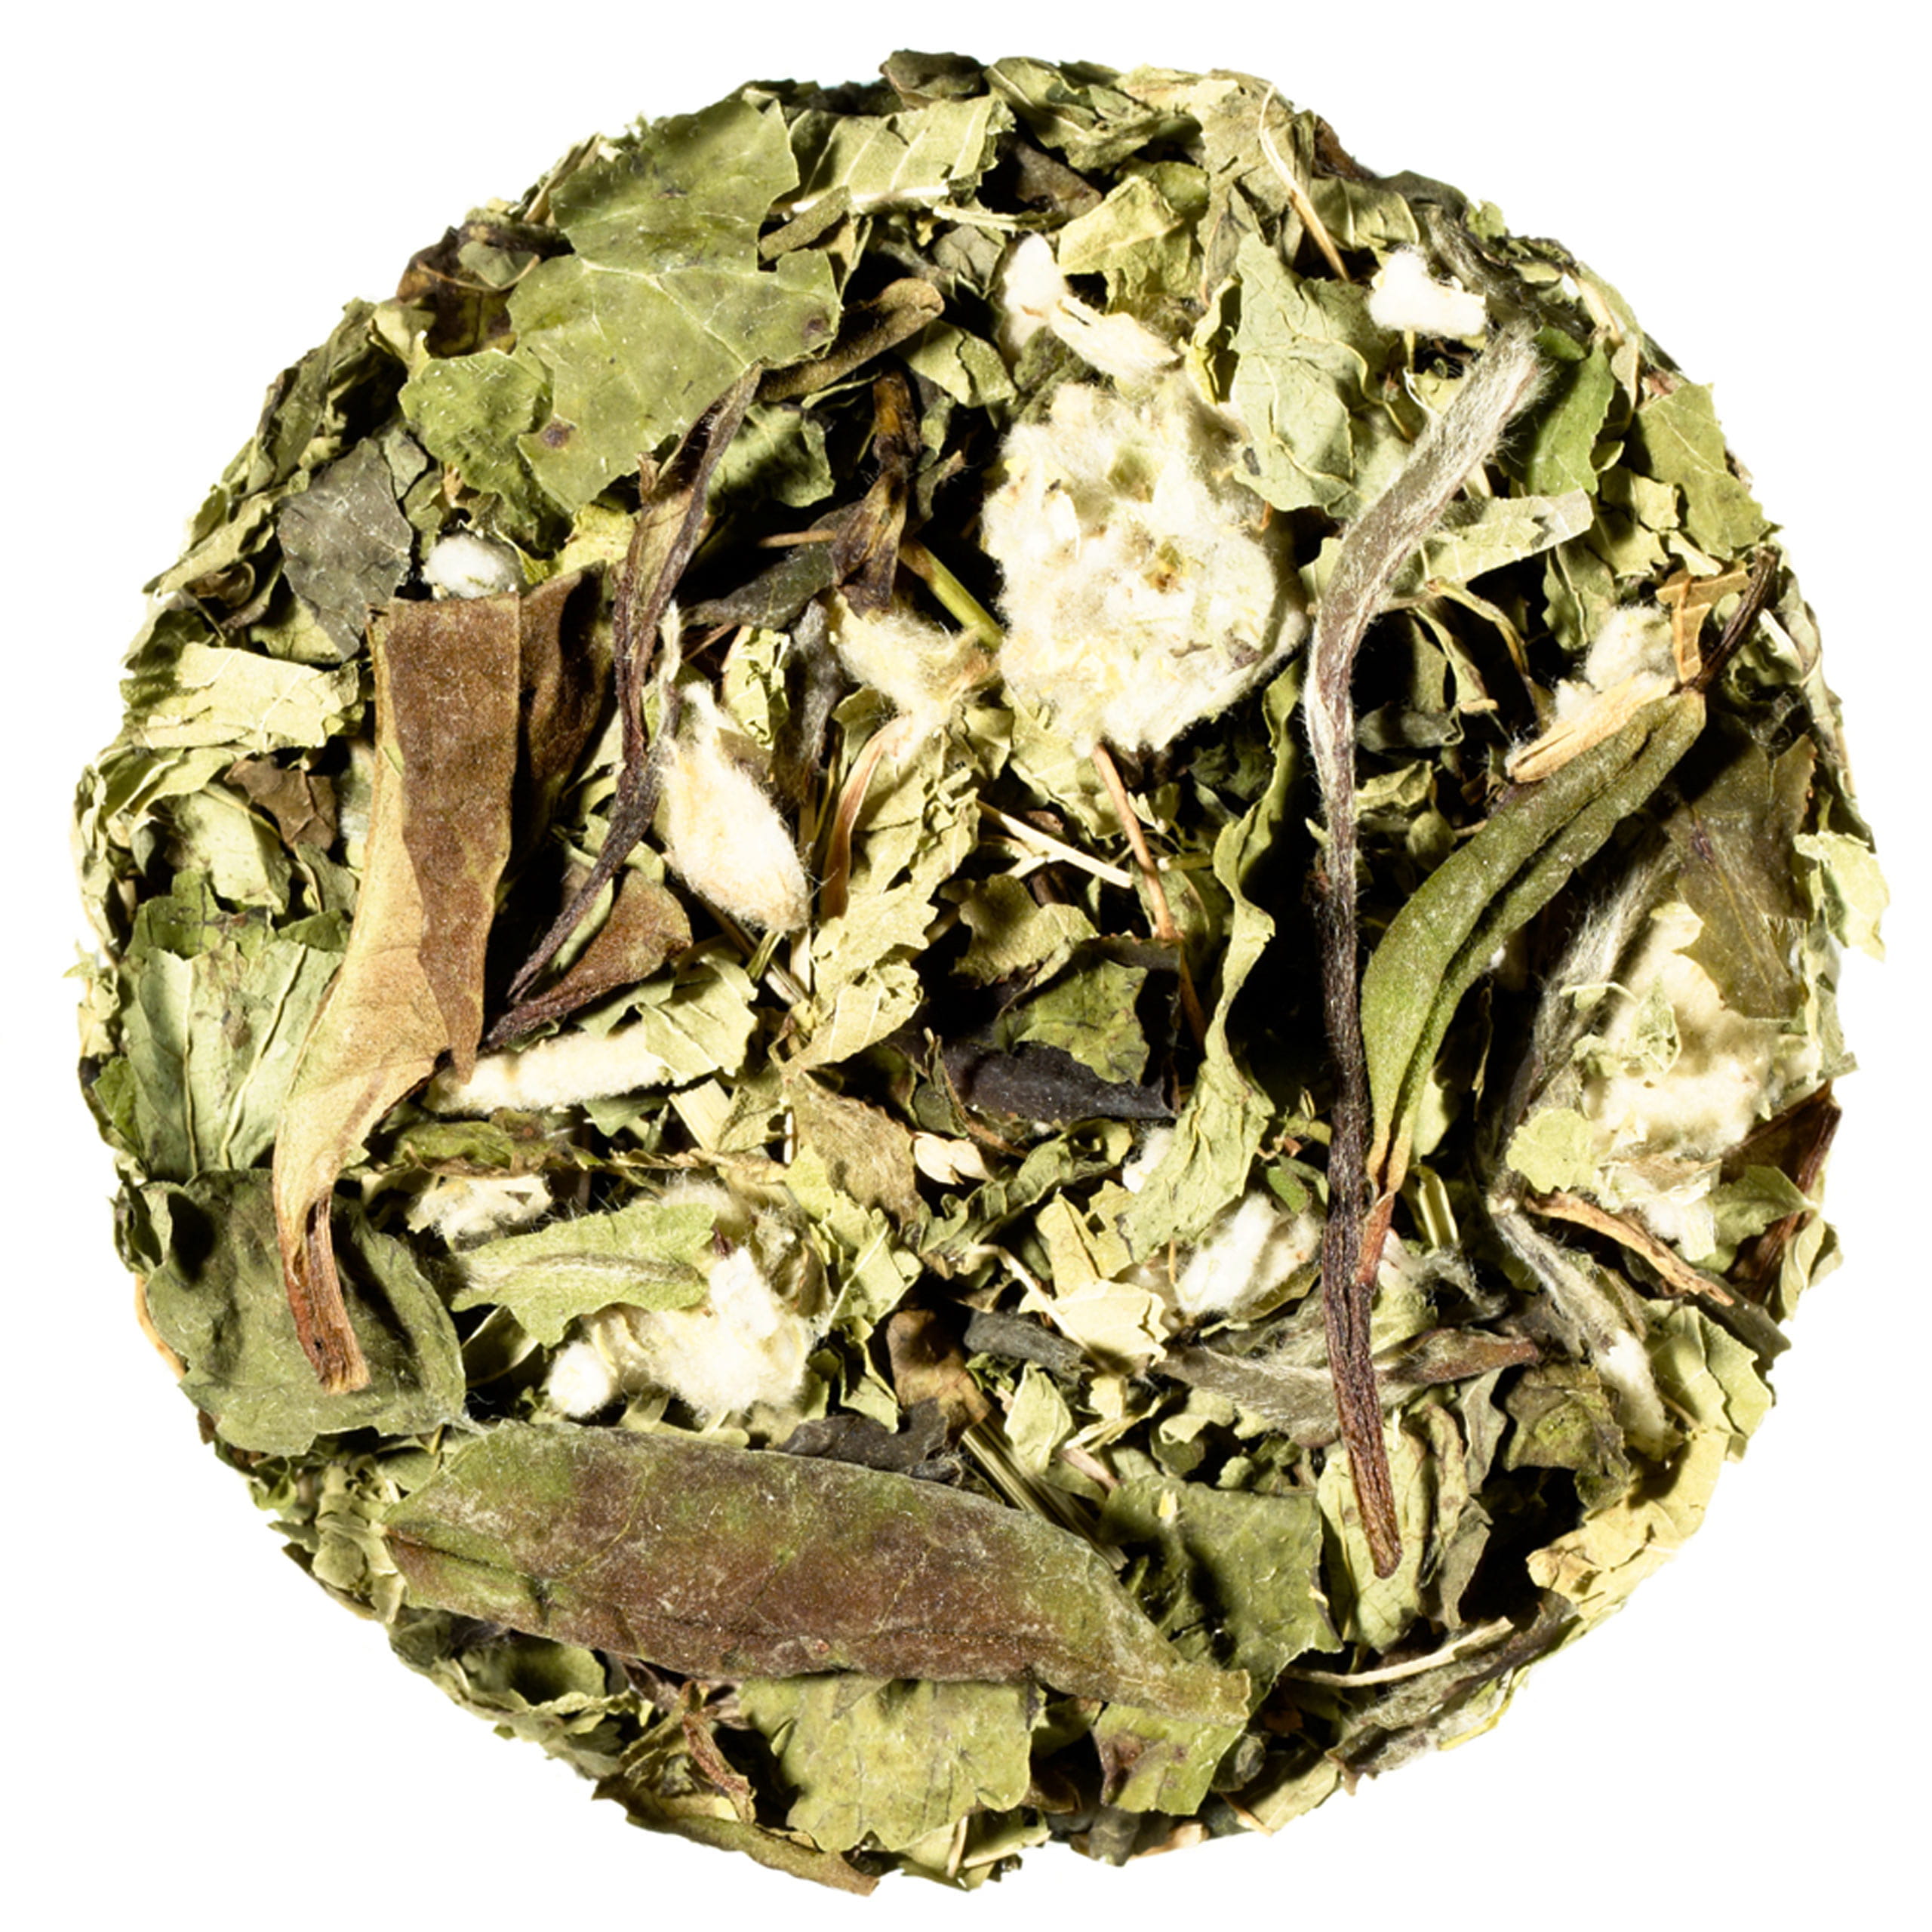 Composición del té Green Chill